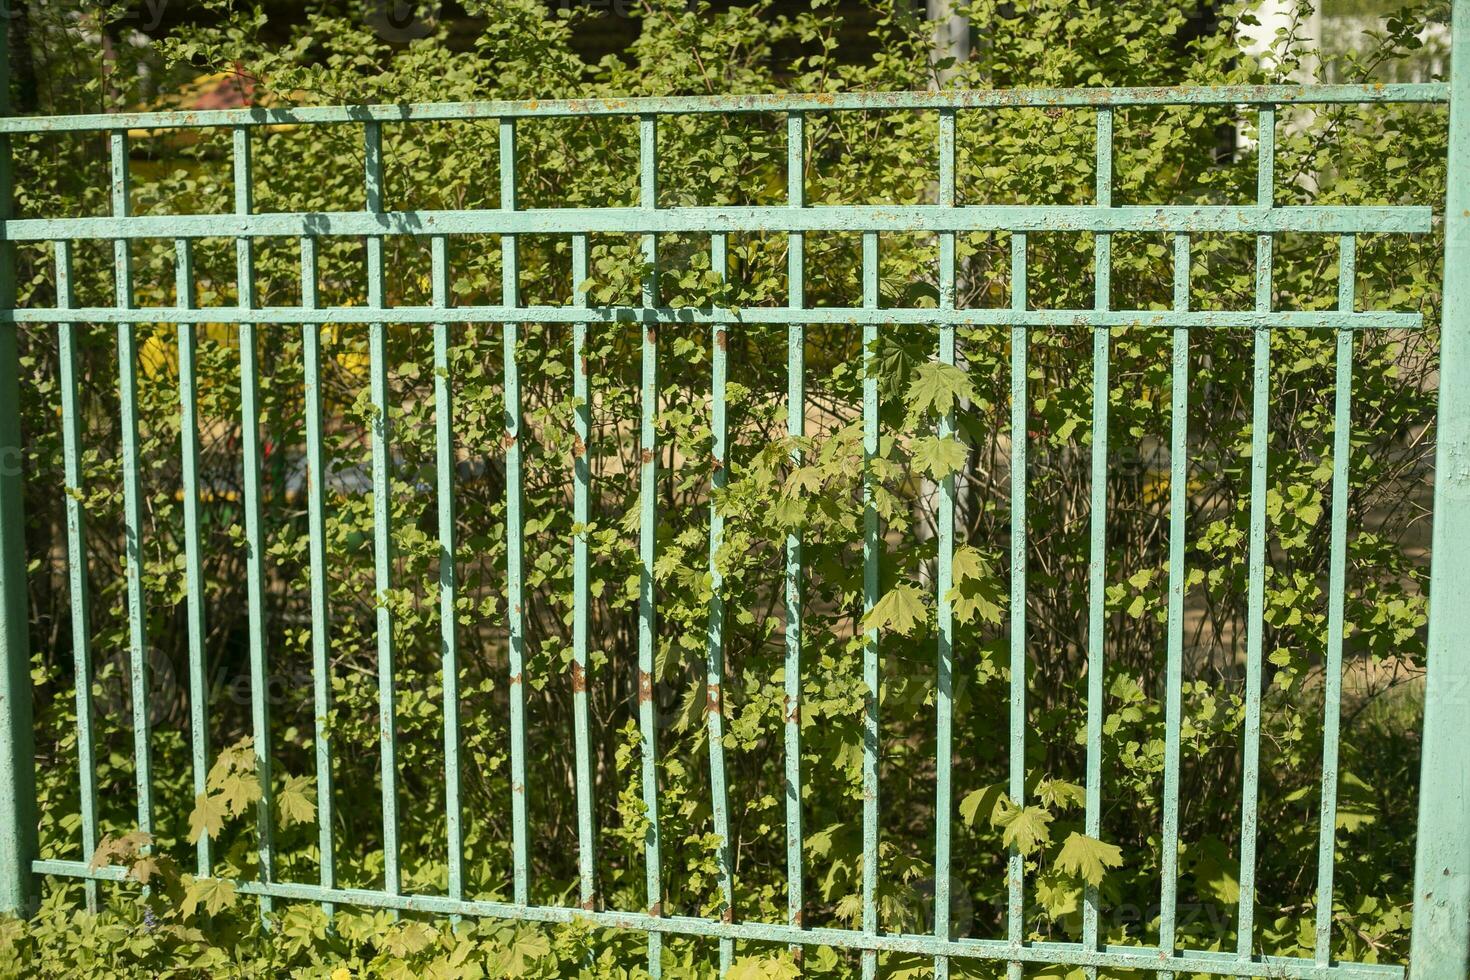 verde cerca hecho de acero varillas cerca alrededor parque. detalles de territorio. foto